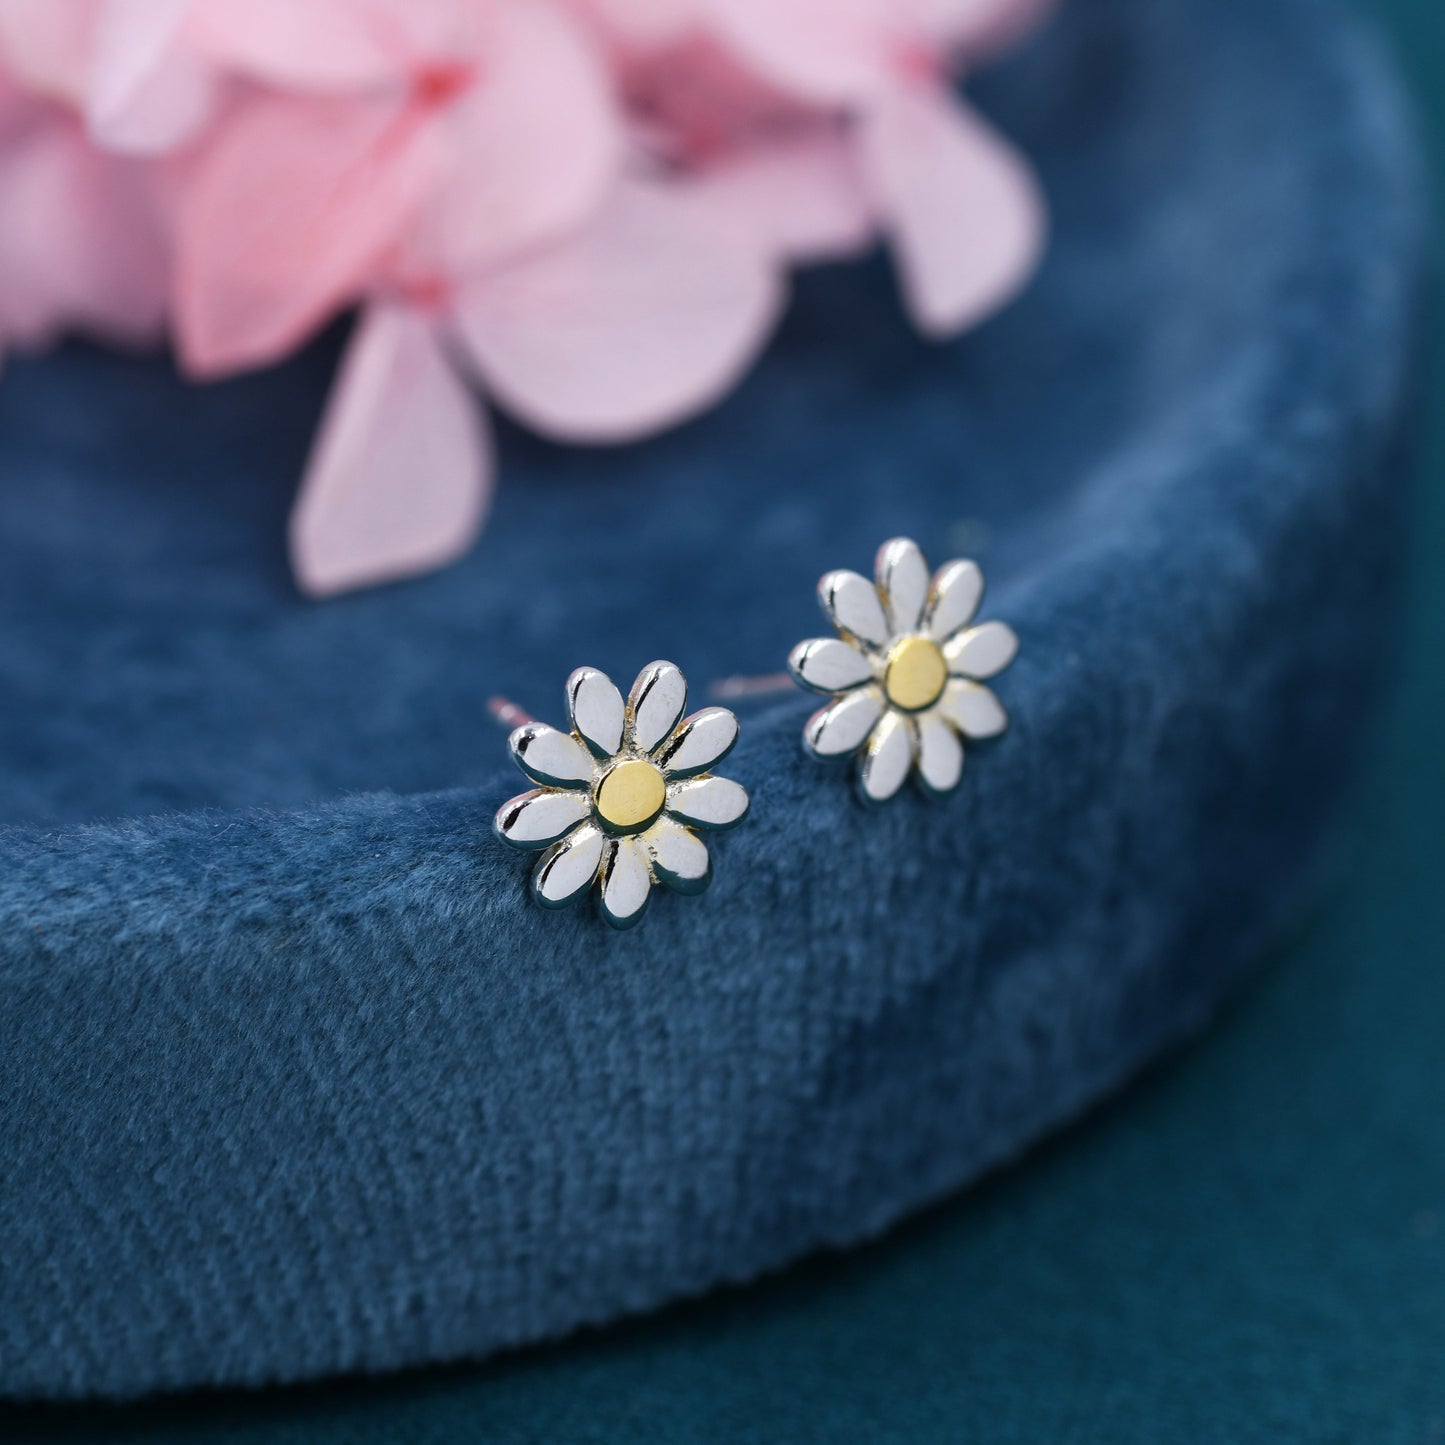 Little Daisy Flower Stud Earrings in Sterling Silver - Cute Flower Blossom Earrings  -   Fun, Whimsical